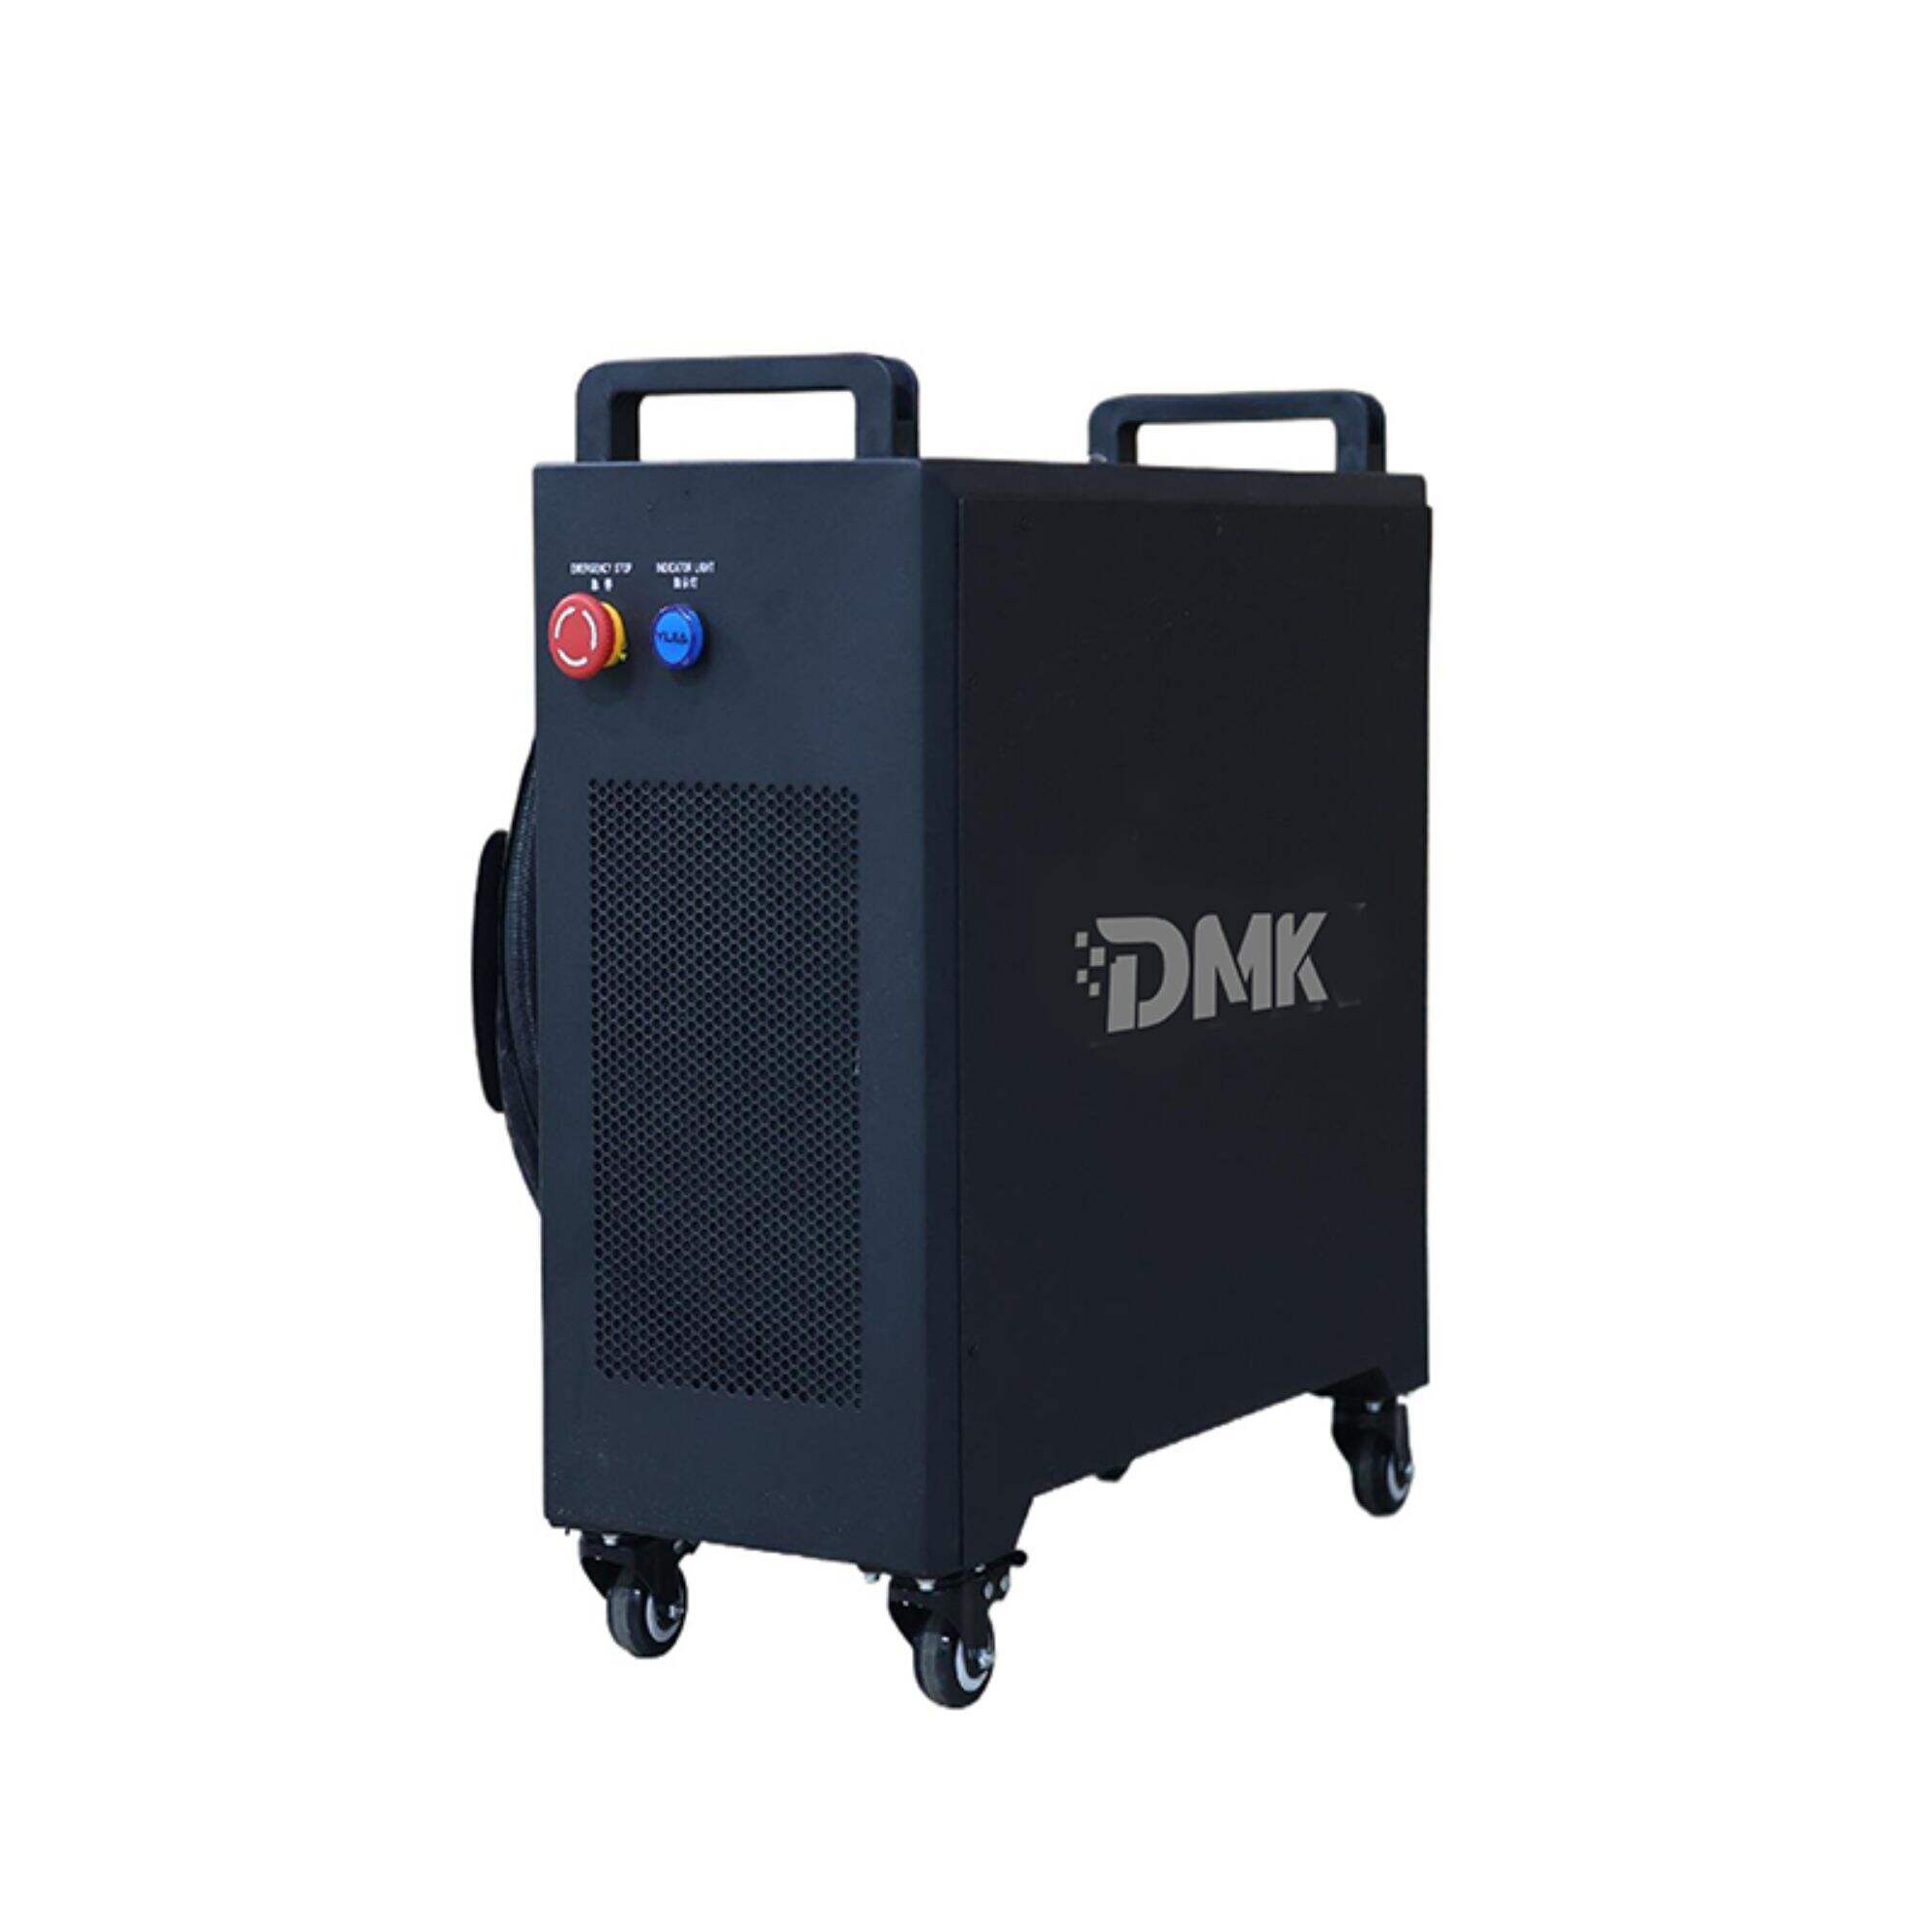 DMK 1500W přenosný ruční vláknový laserový svařovací stroj Mini vzduchem chlazená laserová svářečka